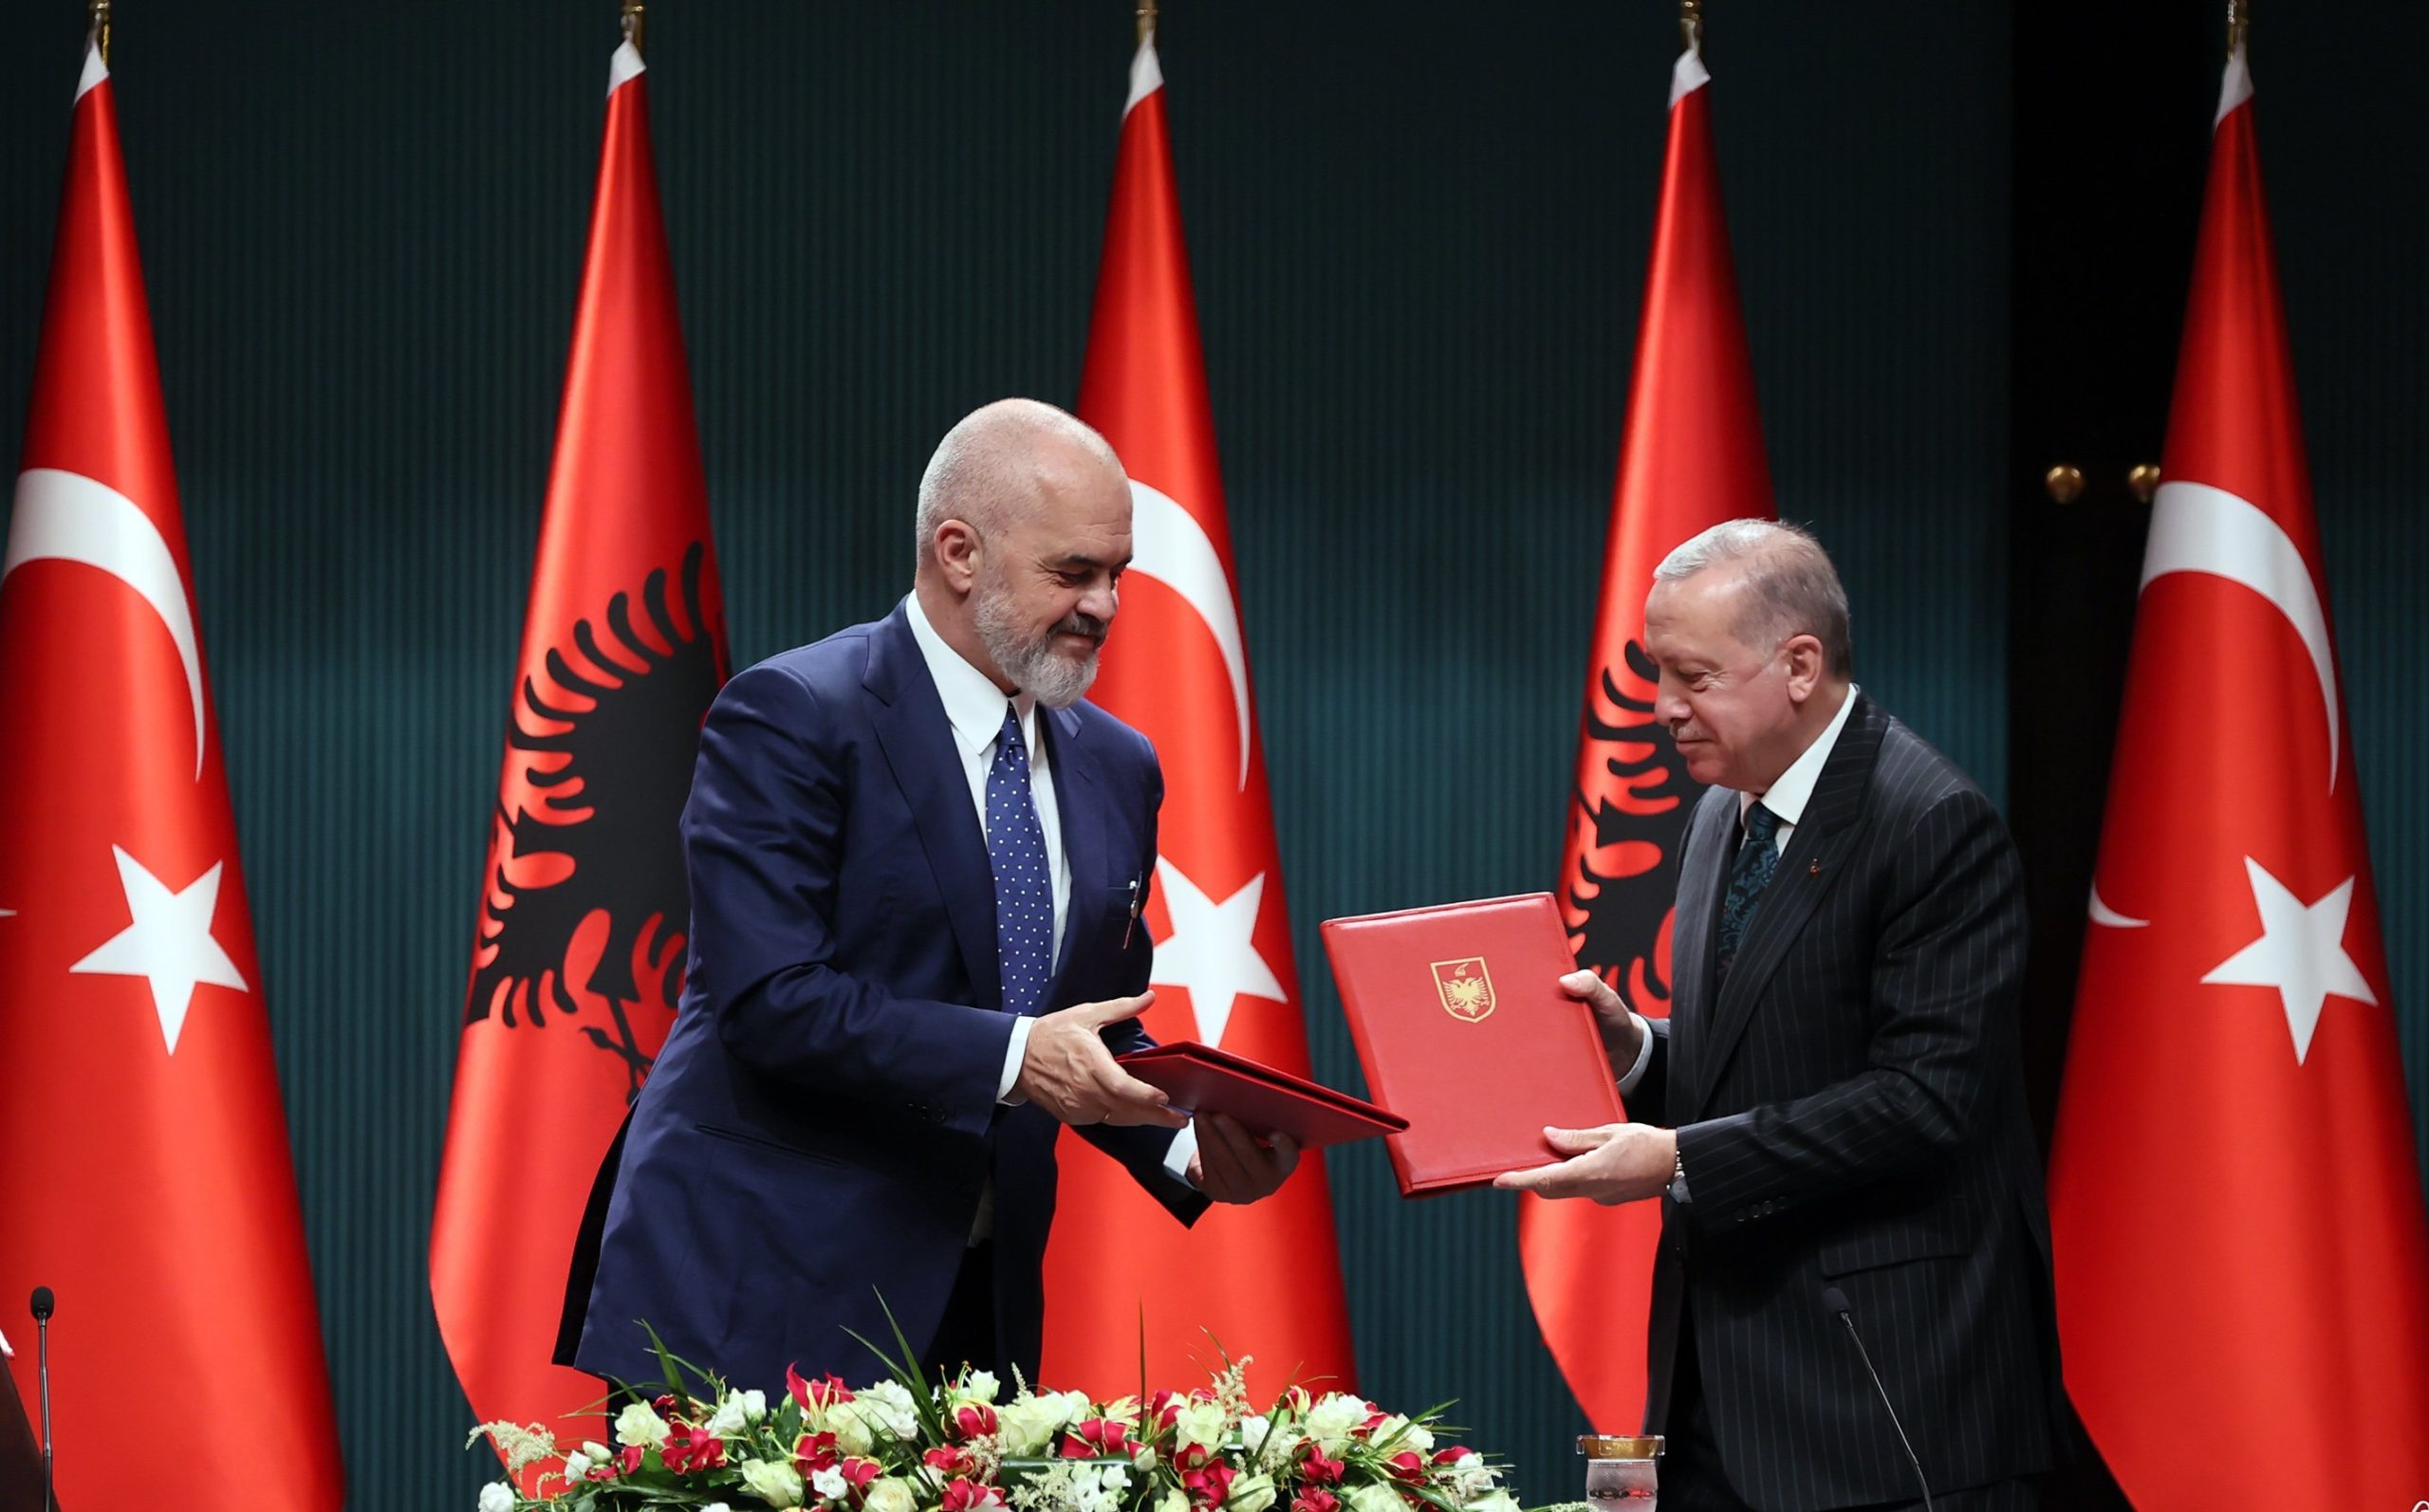 Ε.Ράμα: Συμφωνία με Τουρκία για εγκατάσταση drones και καμερών σε όλη την Αλβανία